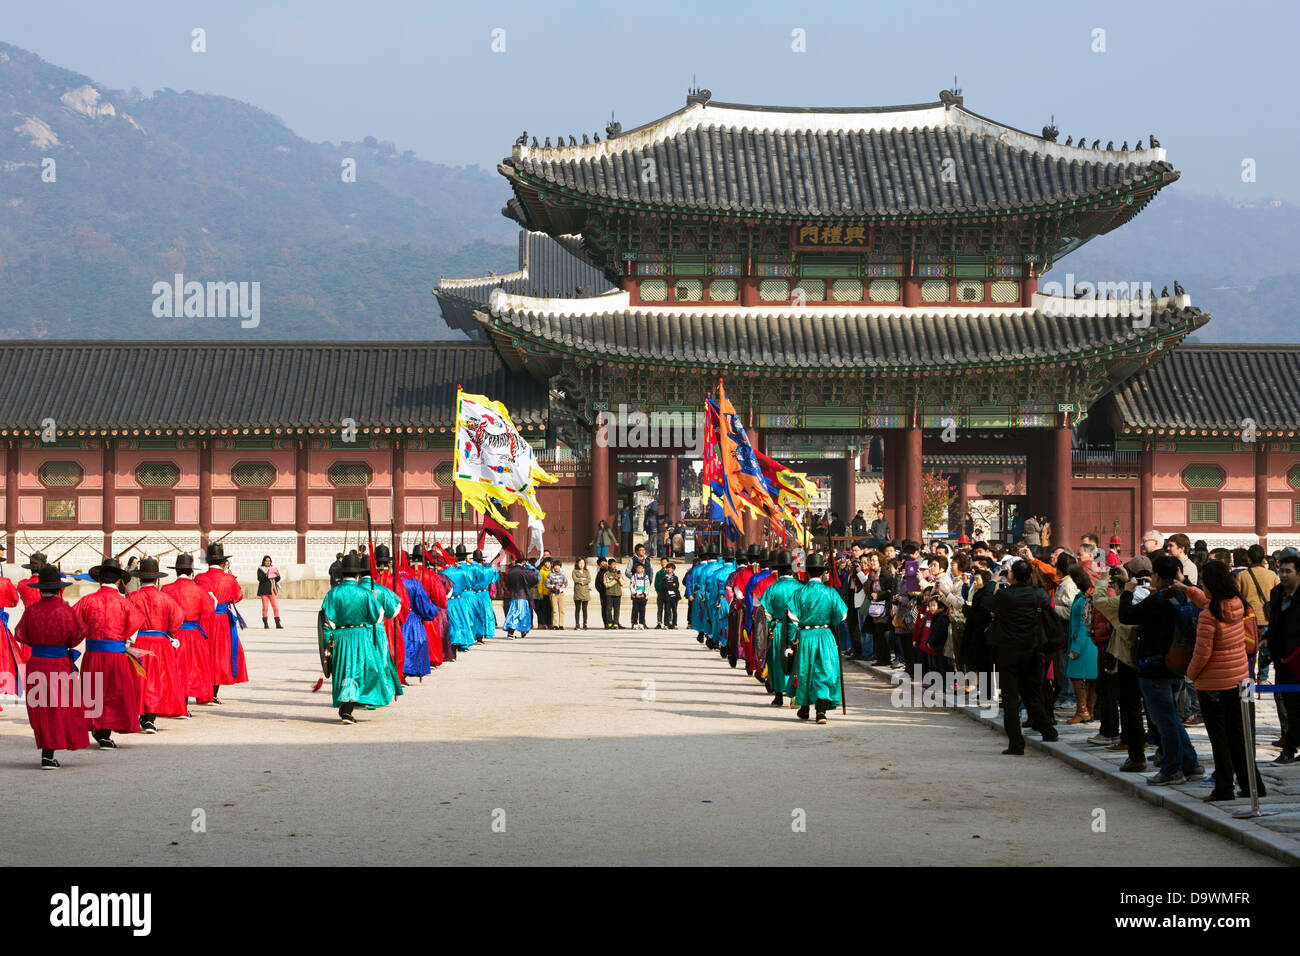 Relève de la garde cérémonie, Gyeongbokgung Palace, palais de bonheur parfait, Séoul, Corée du Sud, Asie Banque D'Images